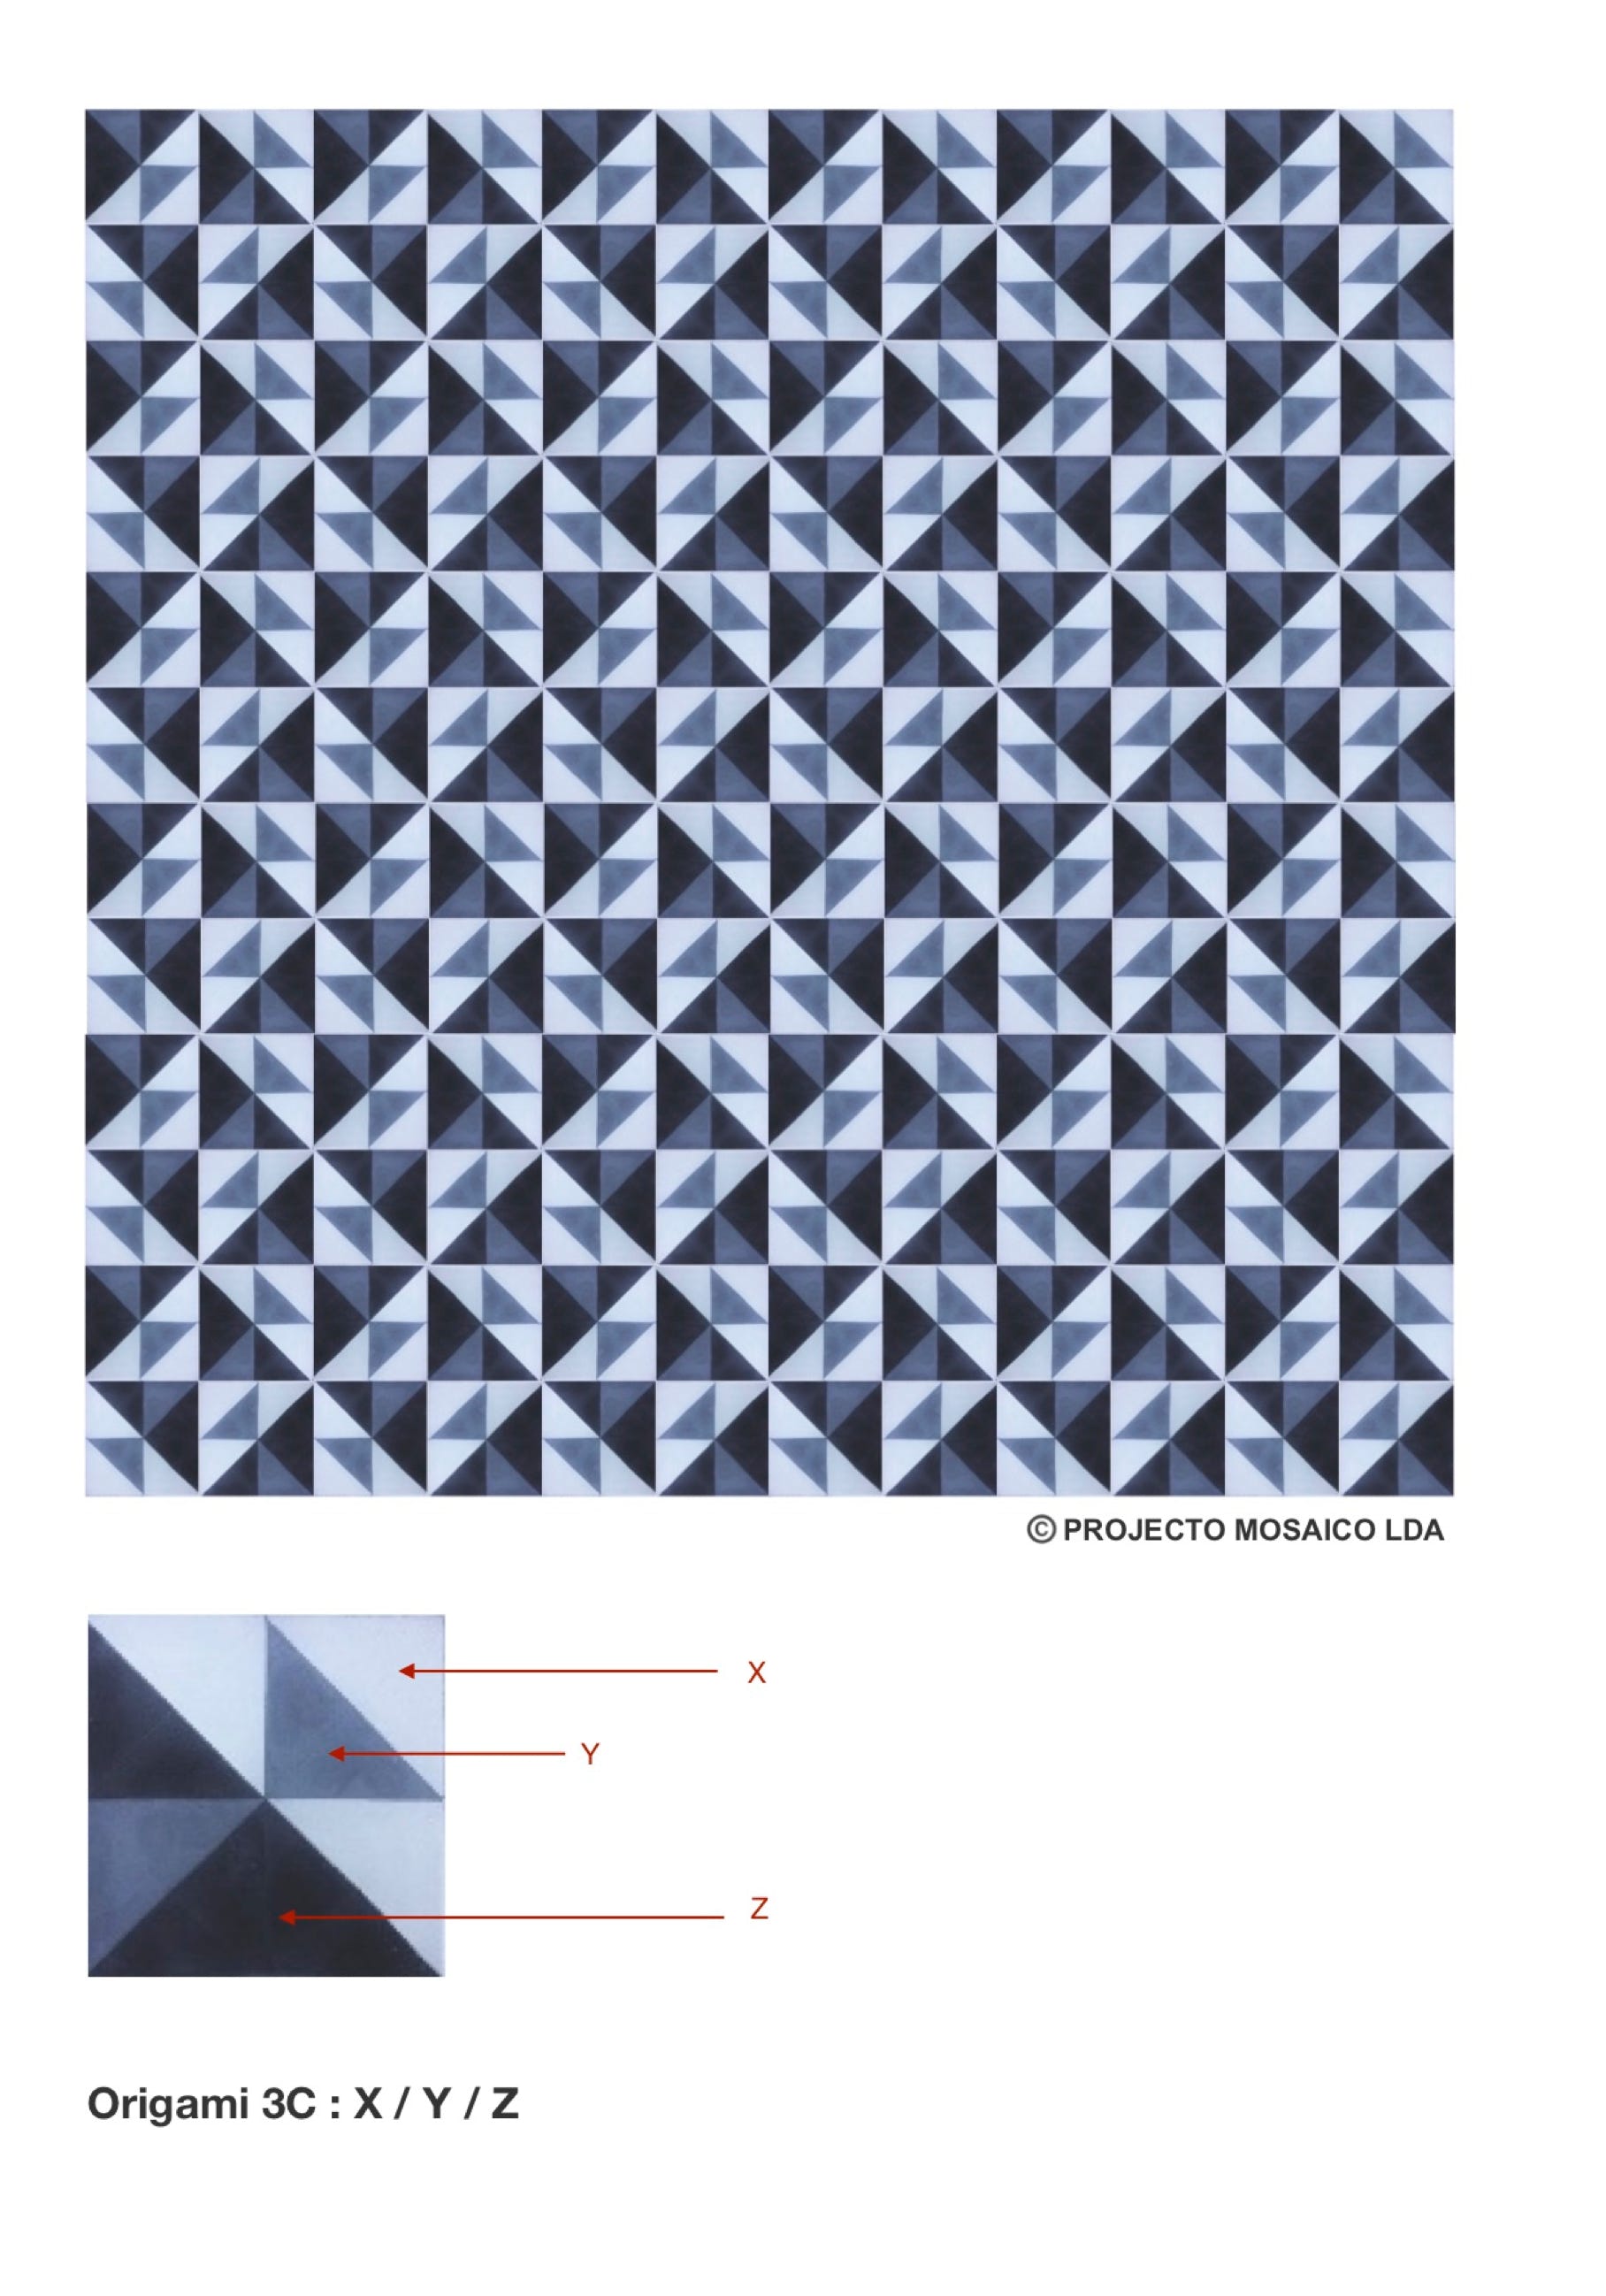 illustração de aplicação do mosaico hidráulico ref: Origami 3C